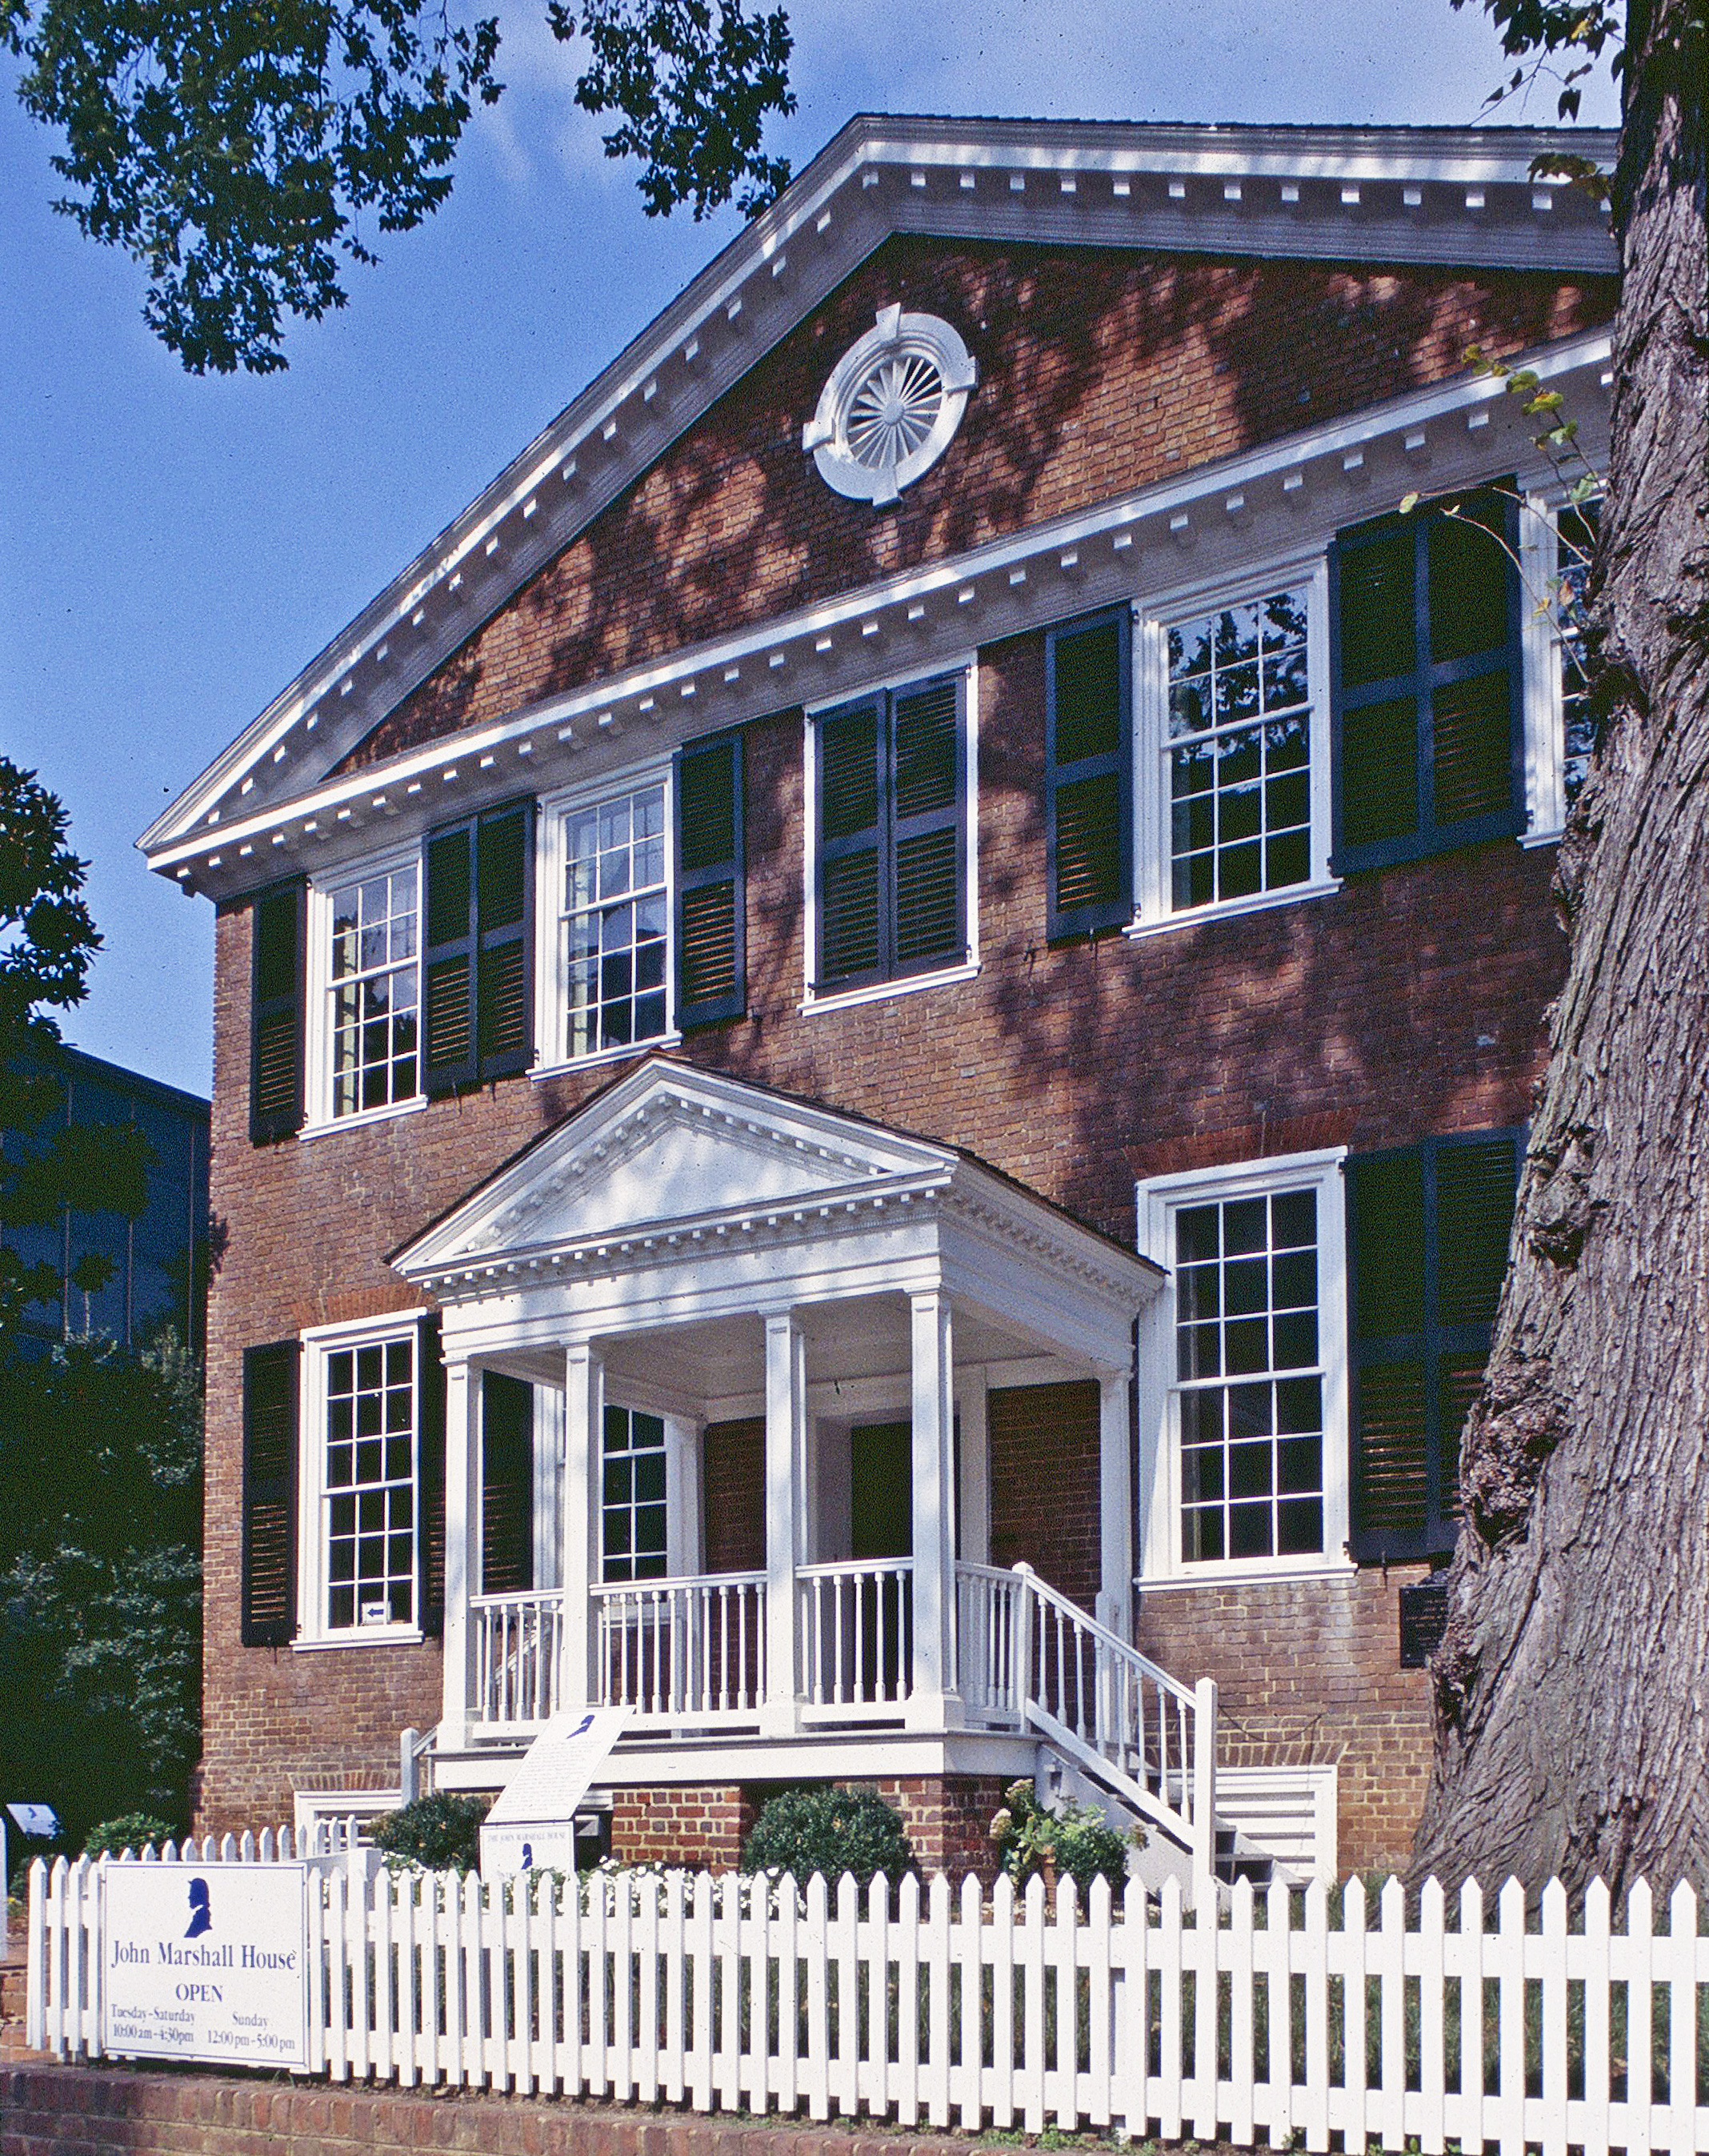 John Marshall House